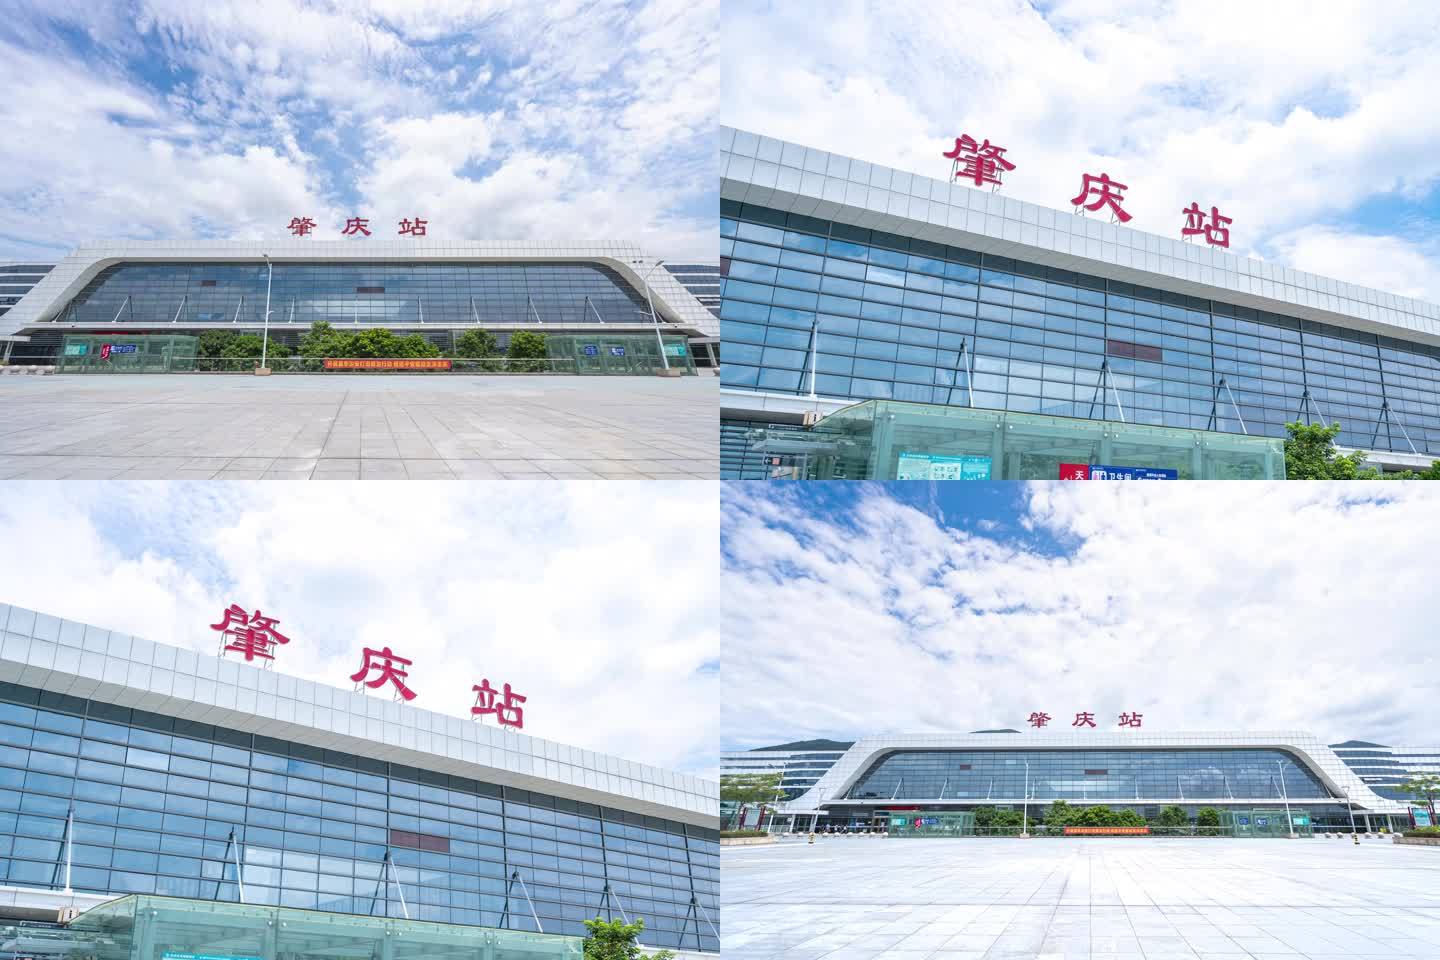 肇庆火车站综合体启用暨东进大道一、二期通车。一路向东畅通无阻